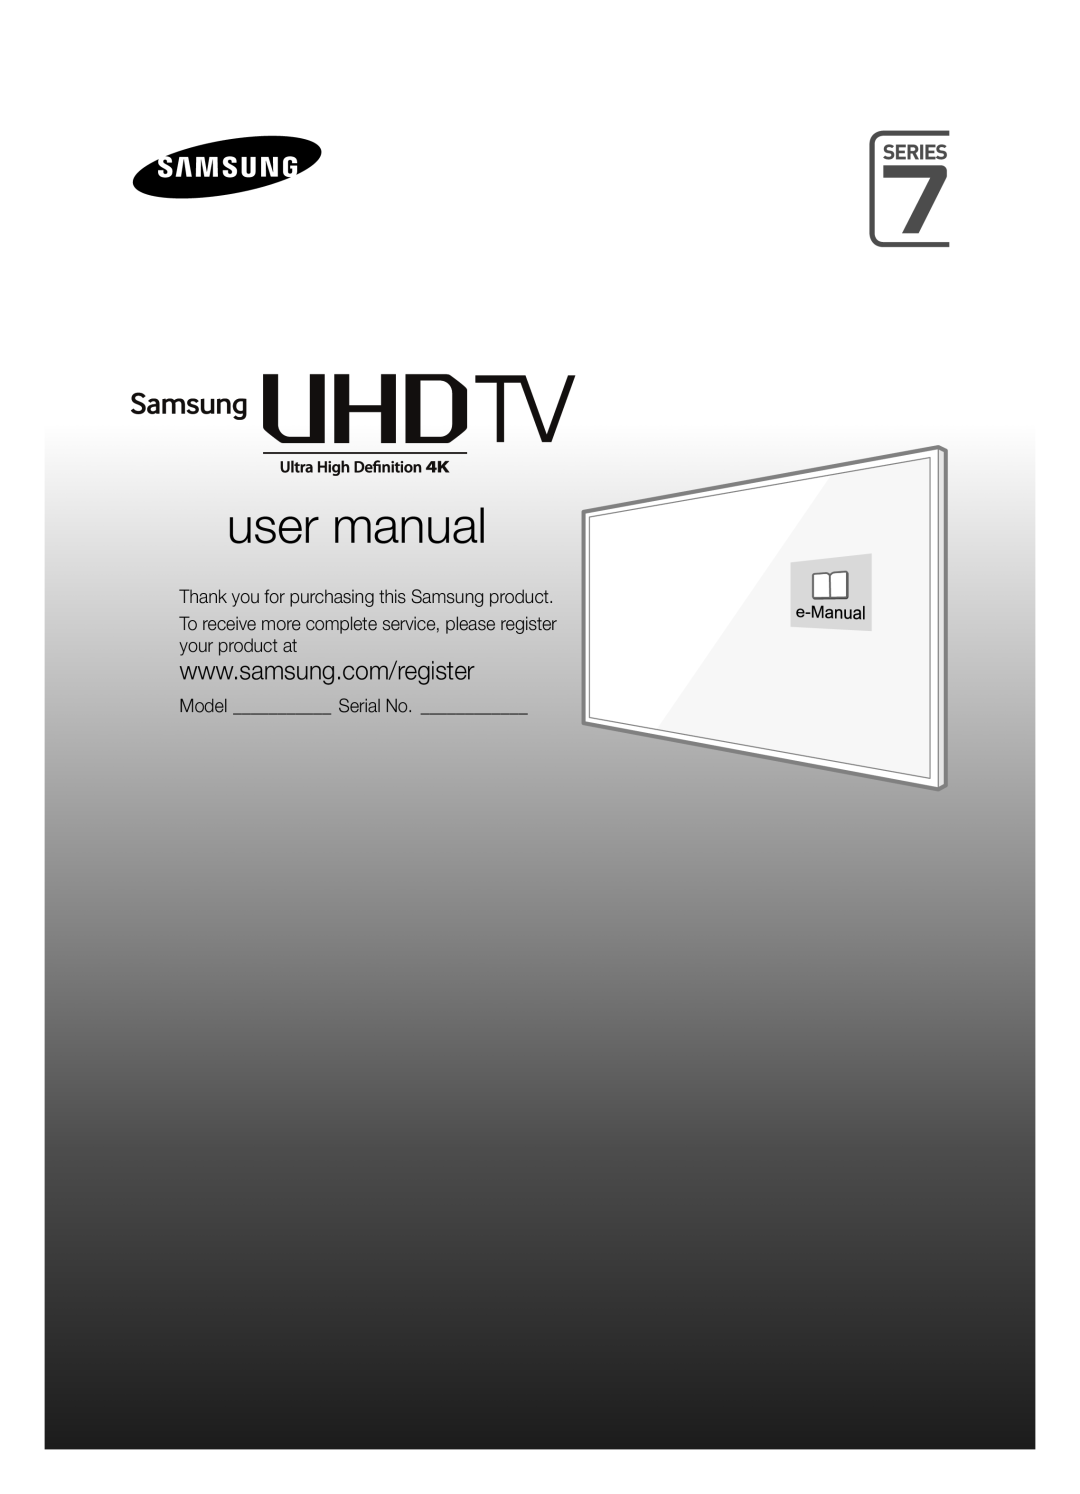 Samsung UE48JU6495UXZG, UE40JU6495UXZG, UE48JU6490UXZG, UE40JU6435UXZG, UE40JU6485UXZG manual E-Manual, Model Serial No 